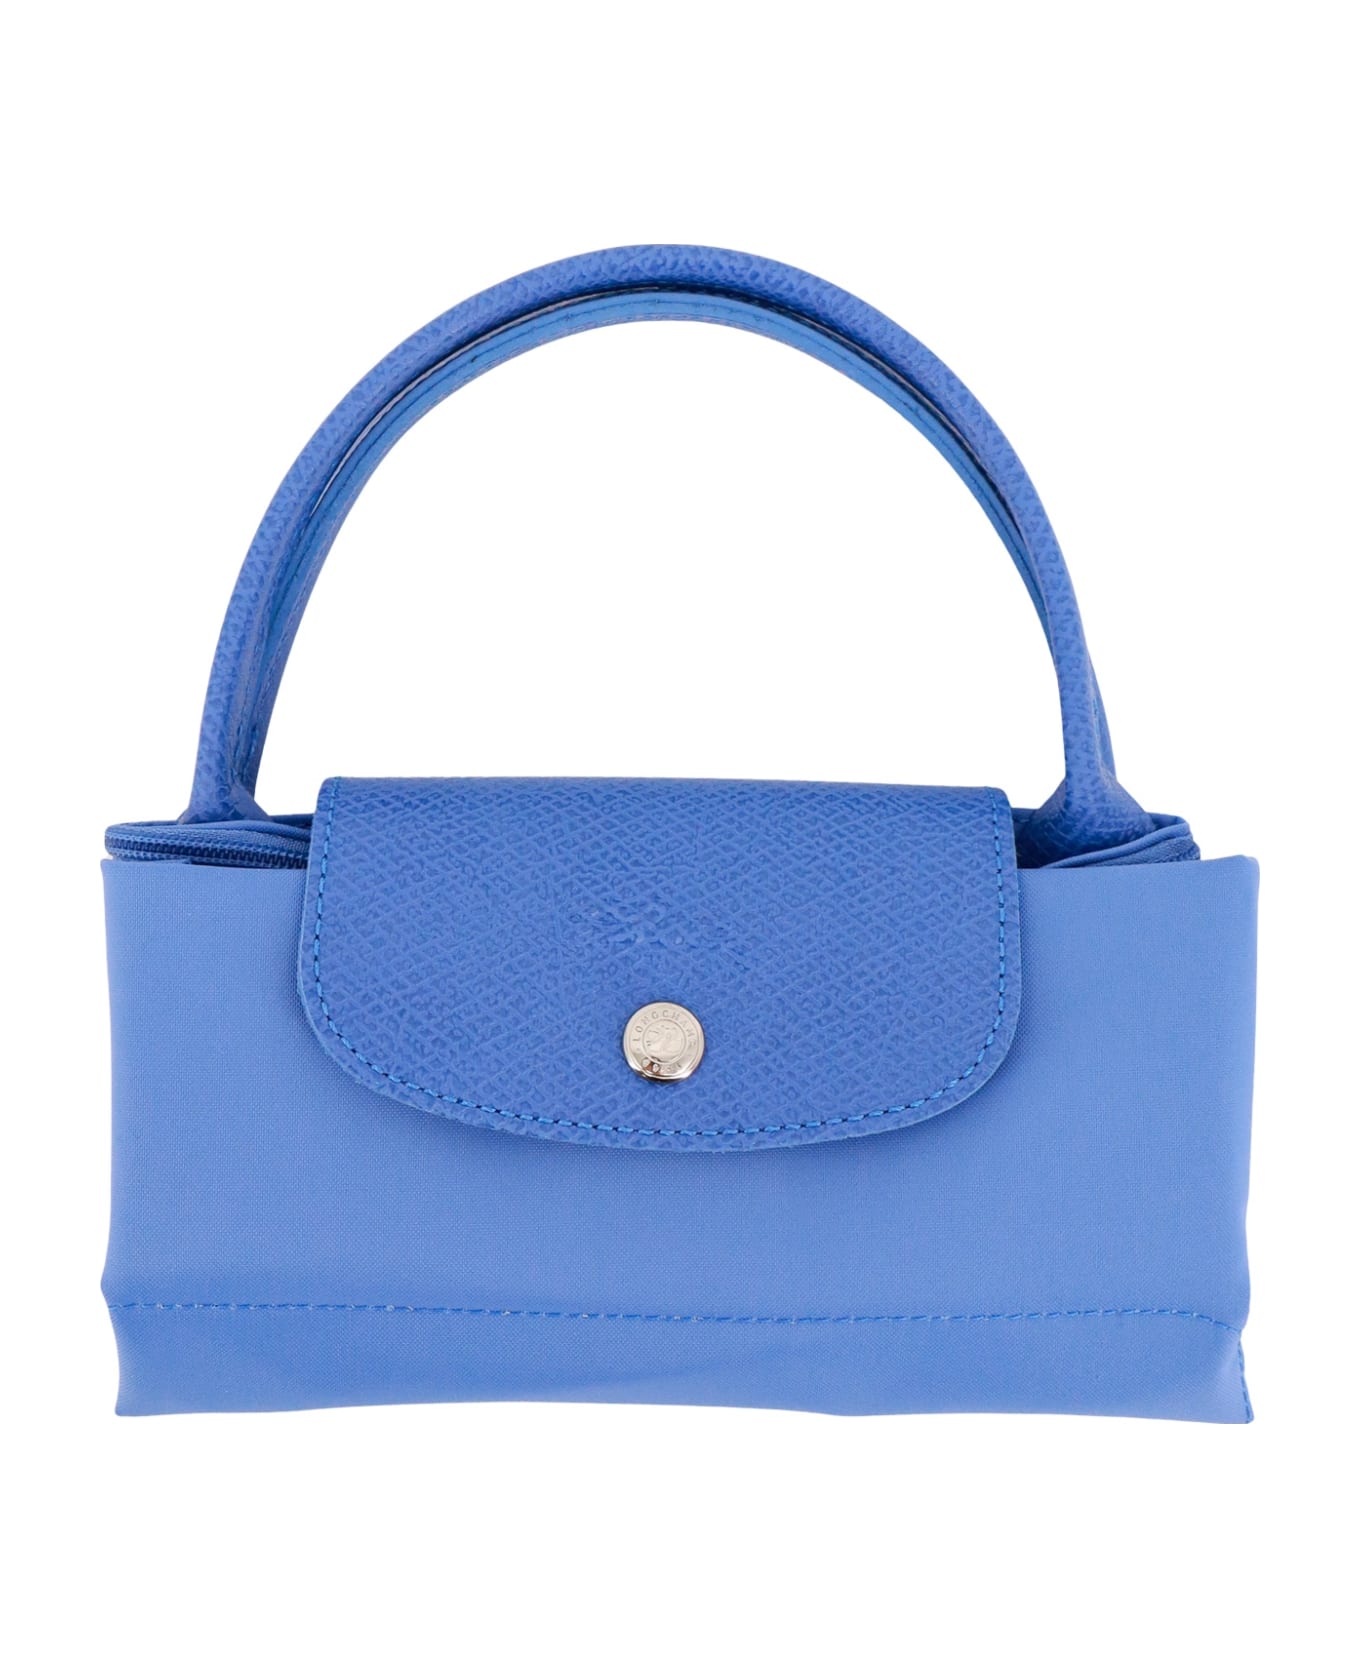 Longchamp Le Pliage Handbag - bleuet トートバッグ